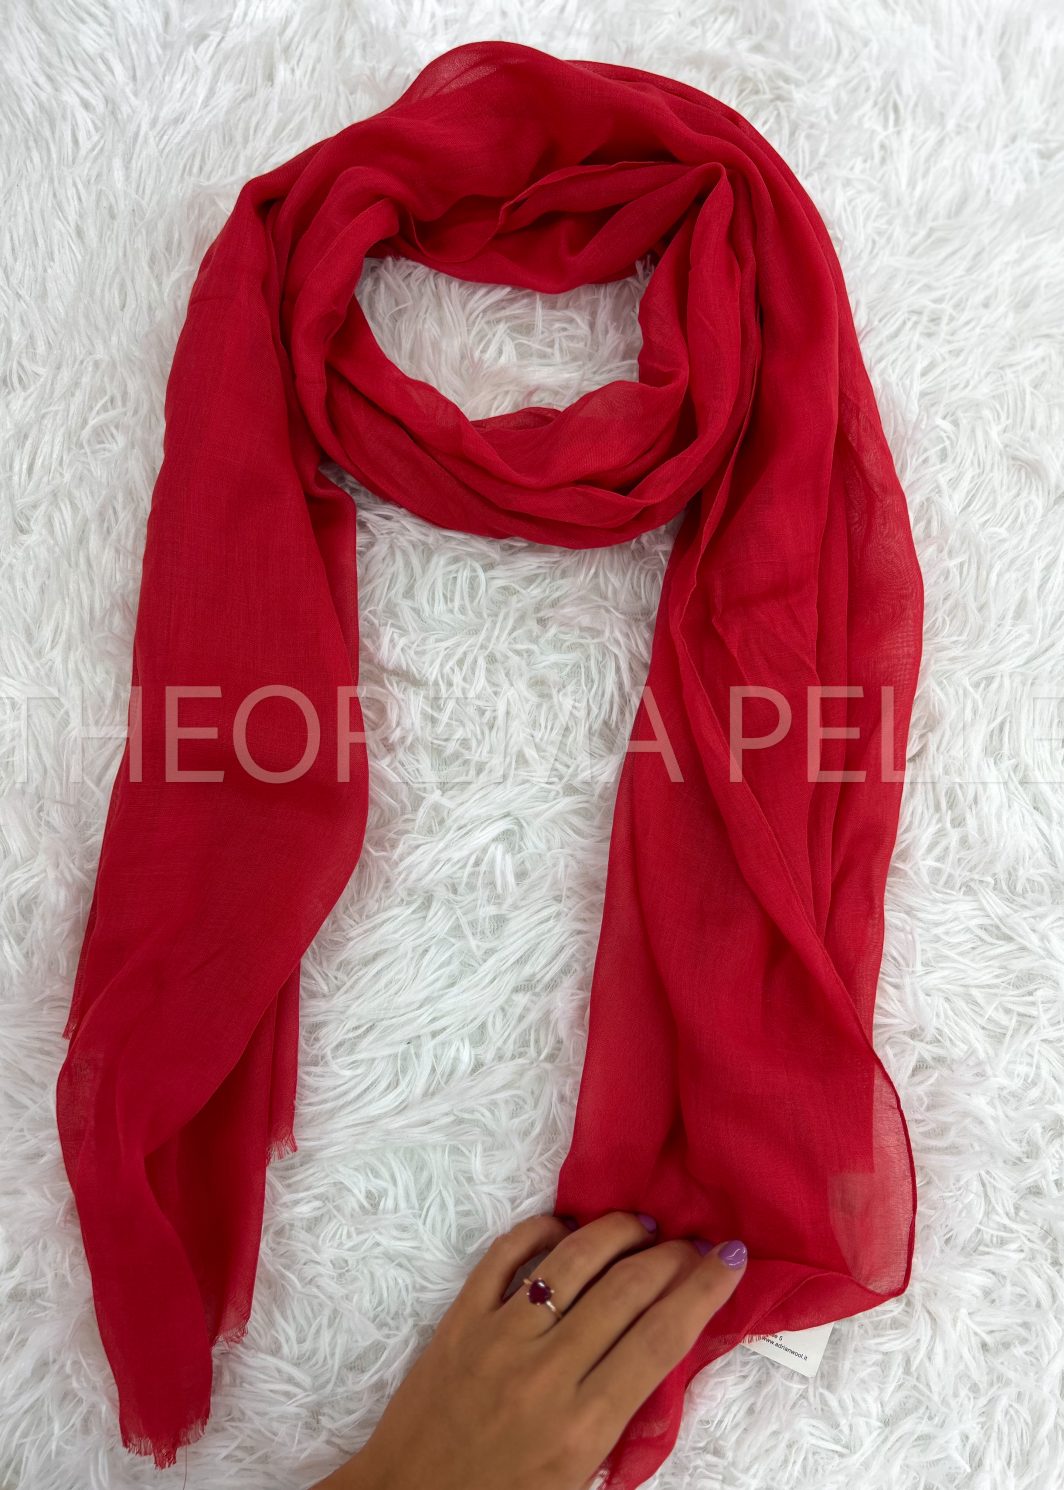 ENNEGI AB05 -guanti donna in vera pelle con fiocco rosso-